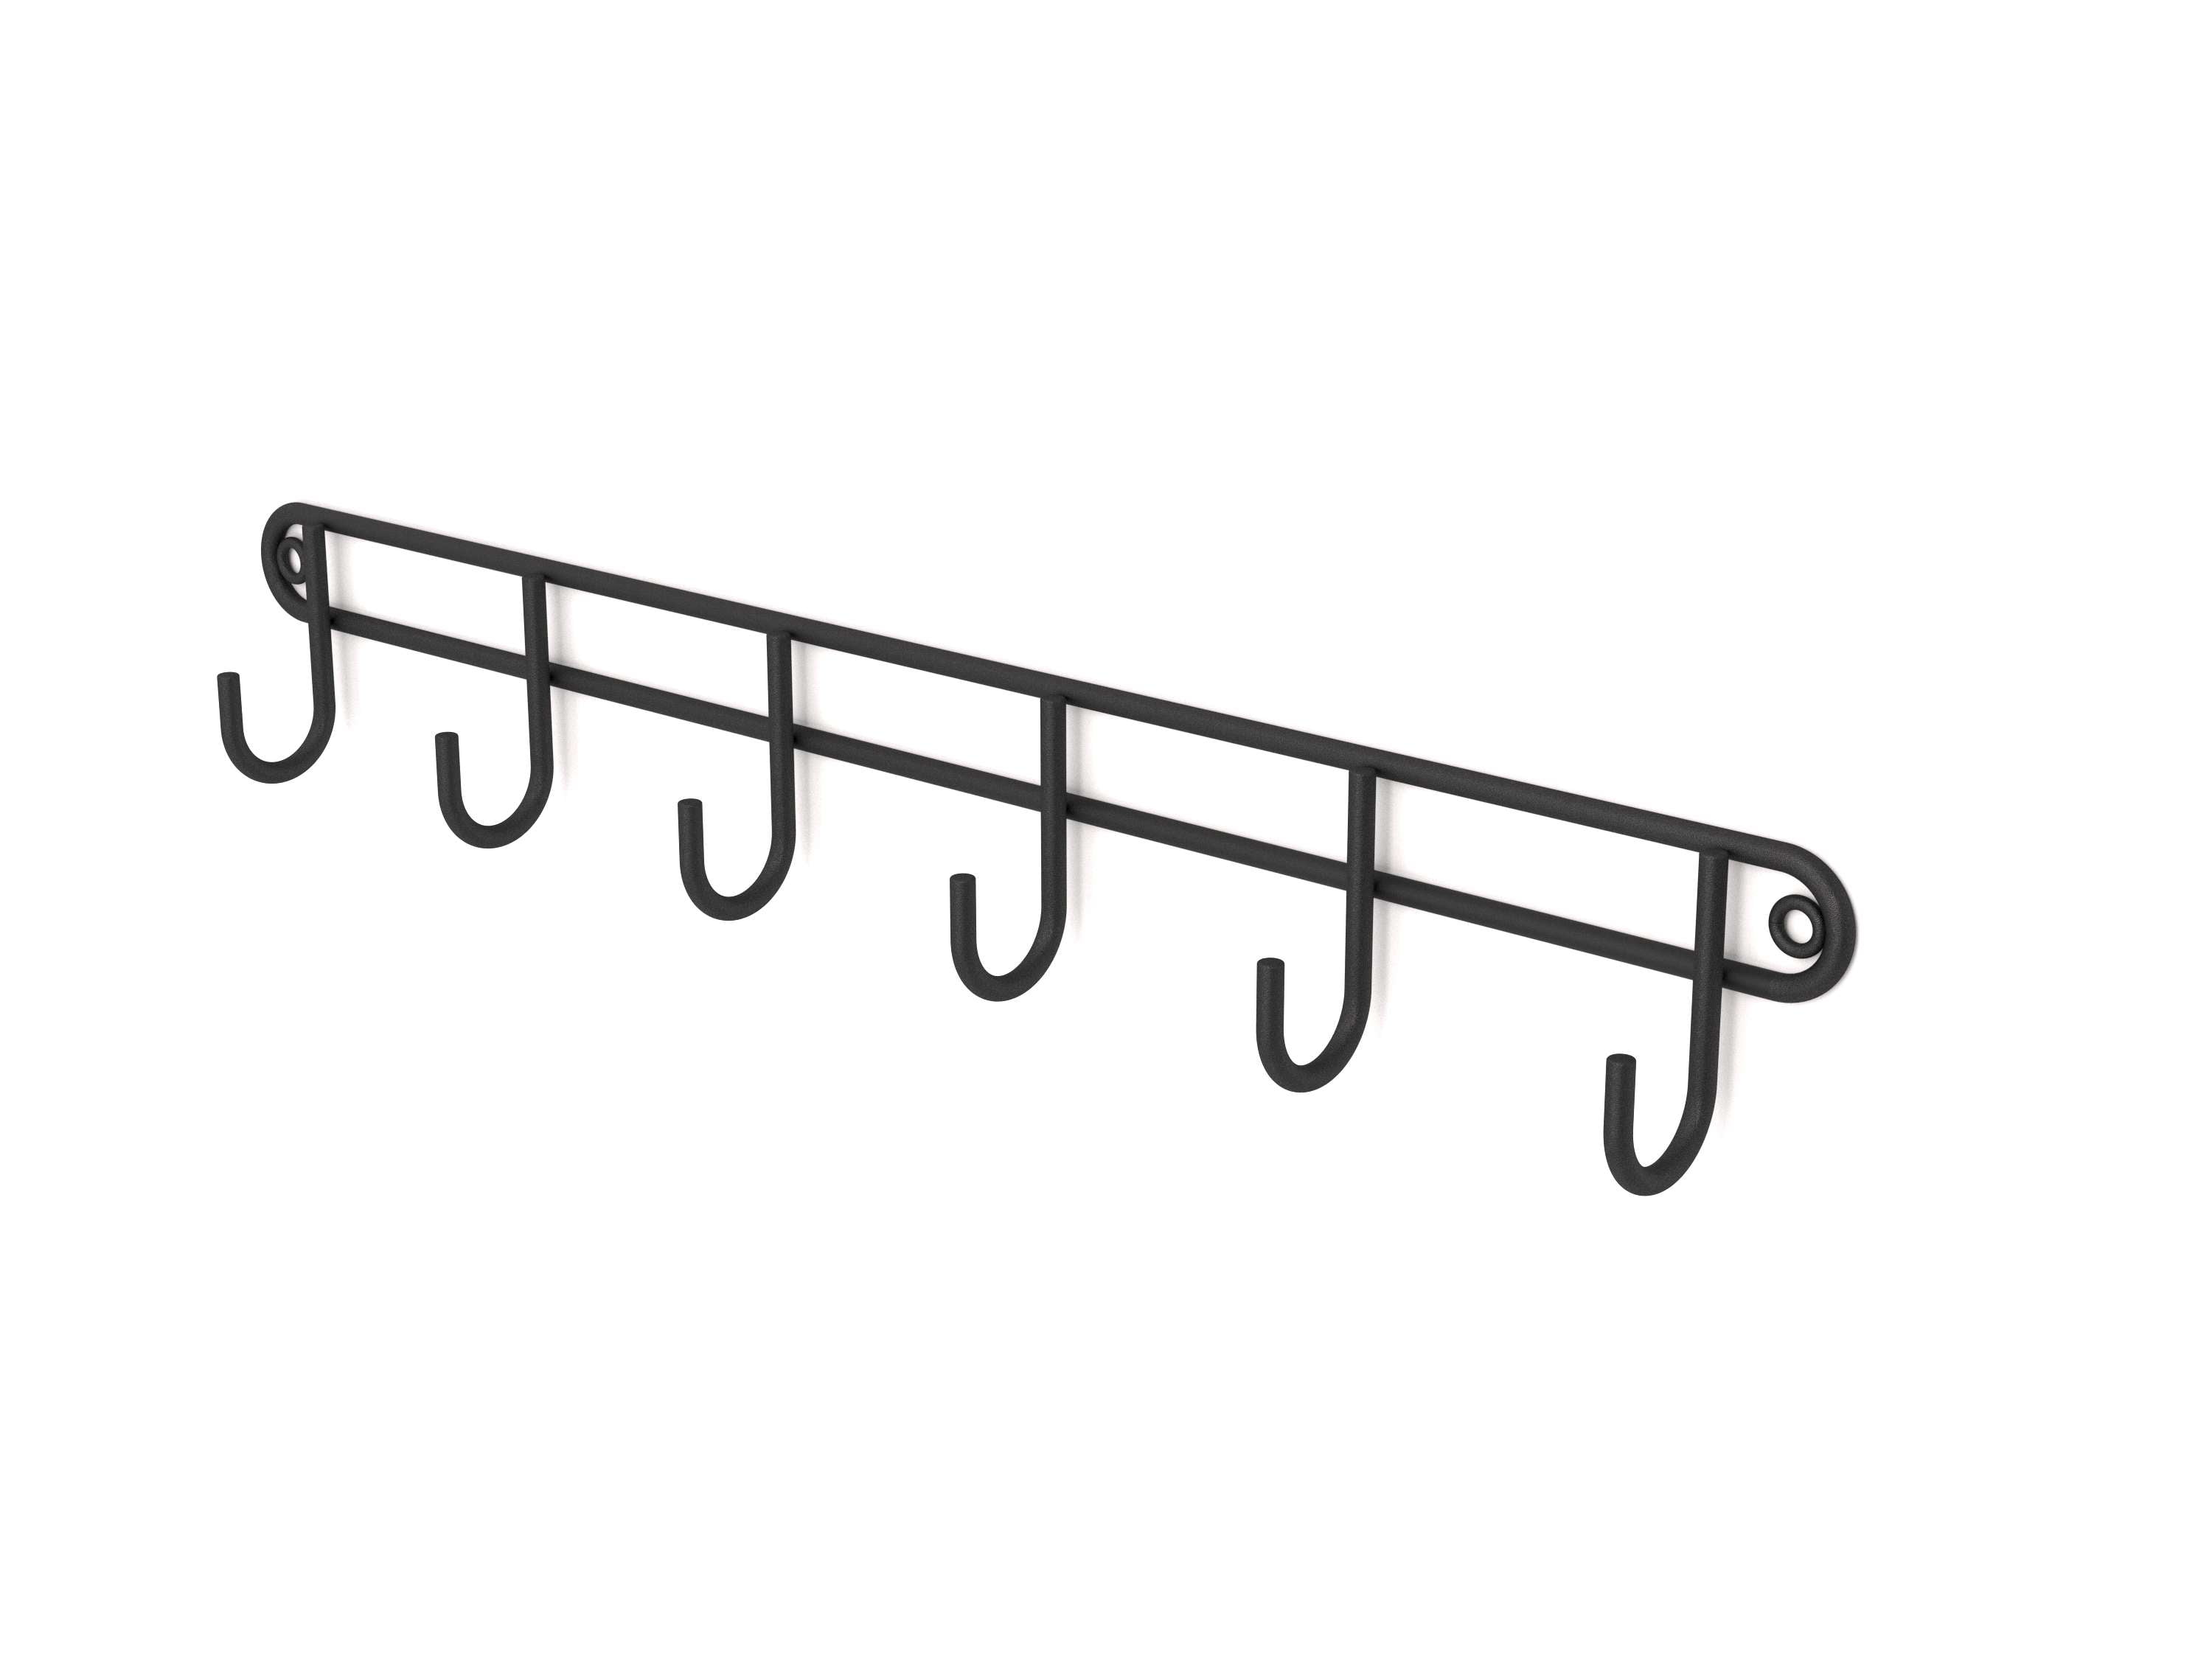 Six hook stainless steel rack useful for utensils, keys, dish